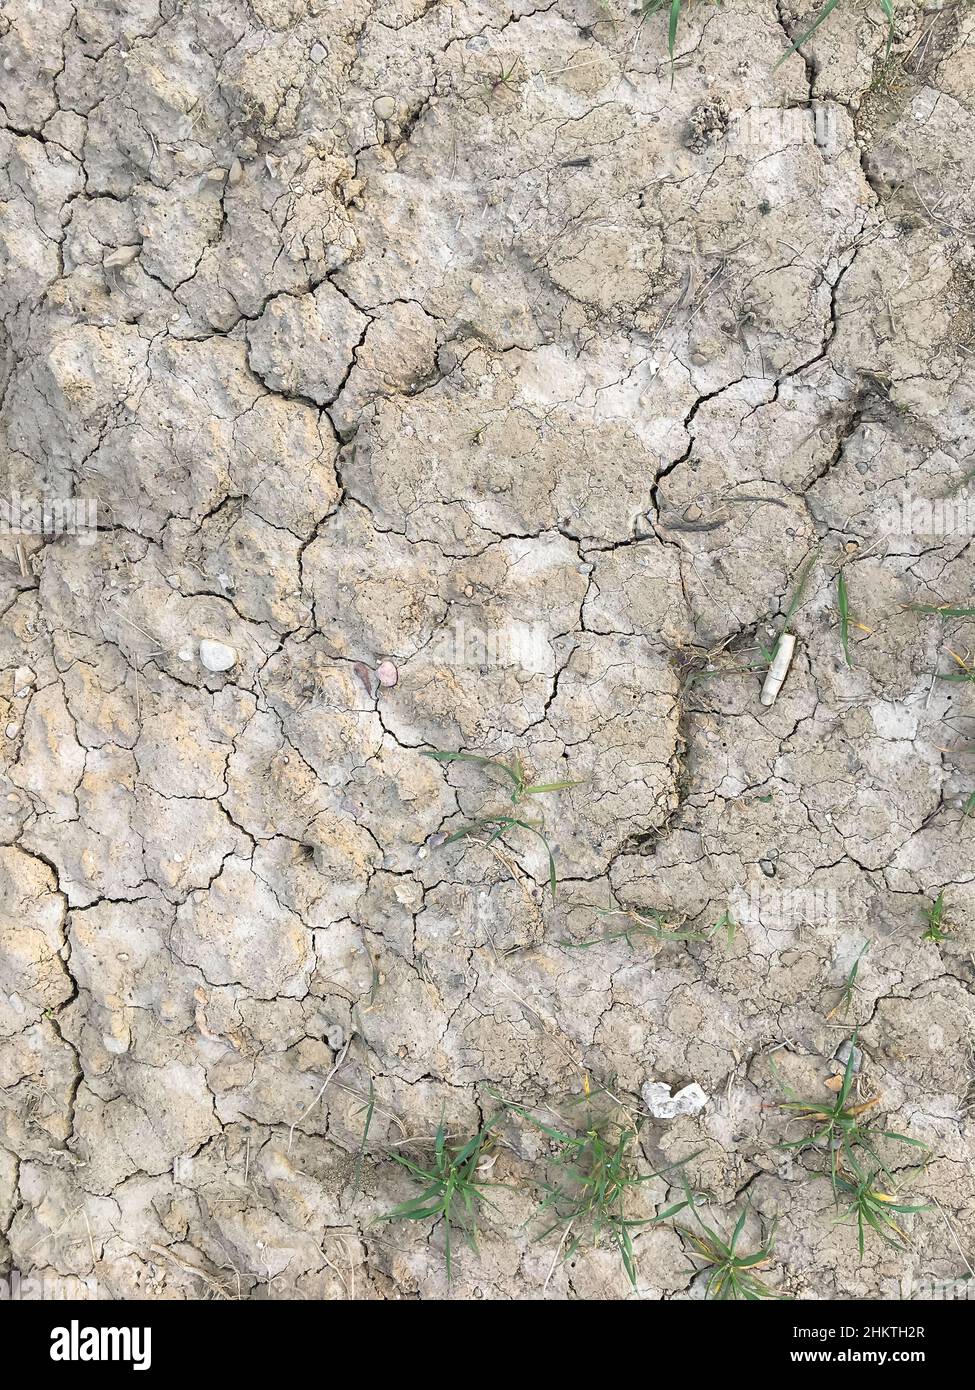 Craquer la terre sur la saison sèche, effet de réchauffement de la planète. Banque D'Images